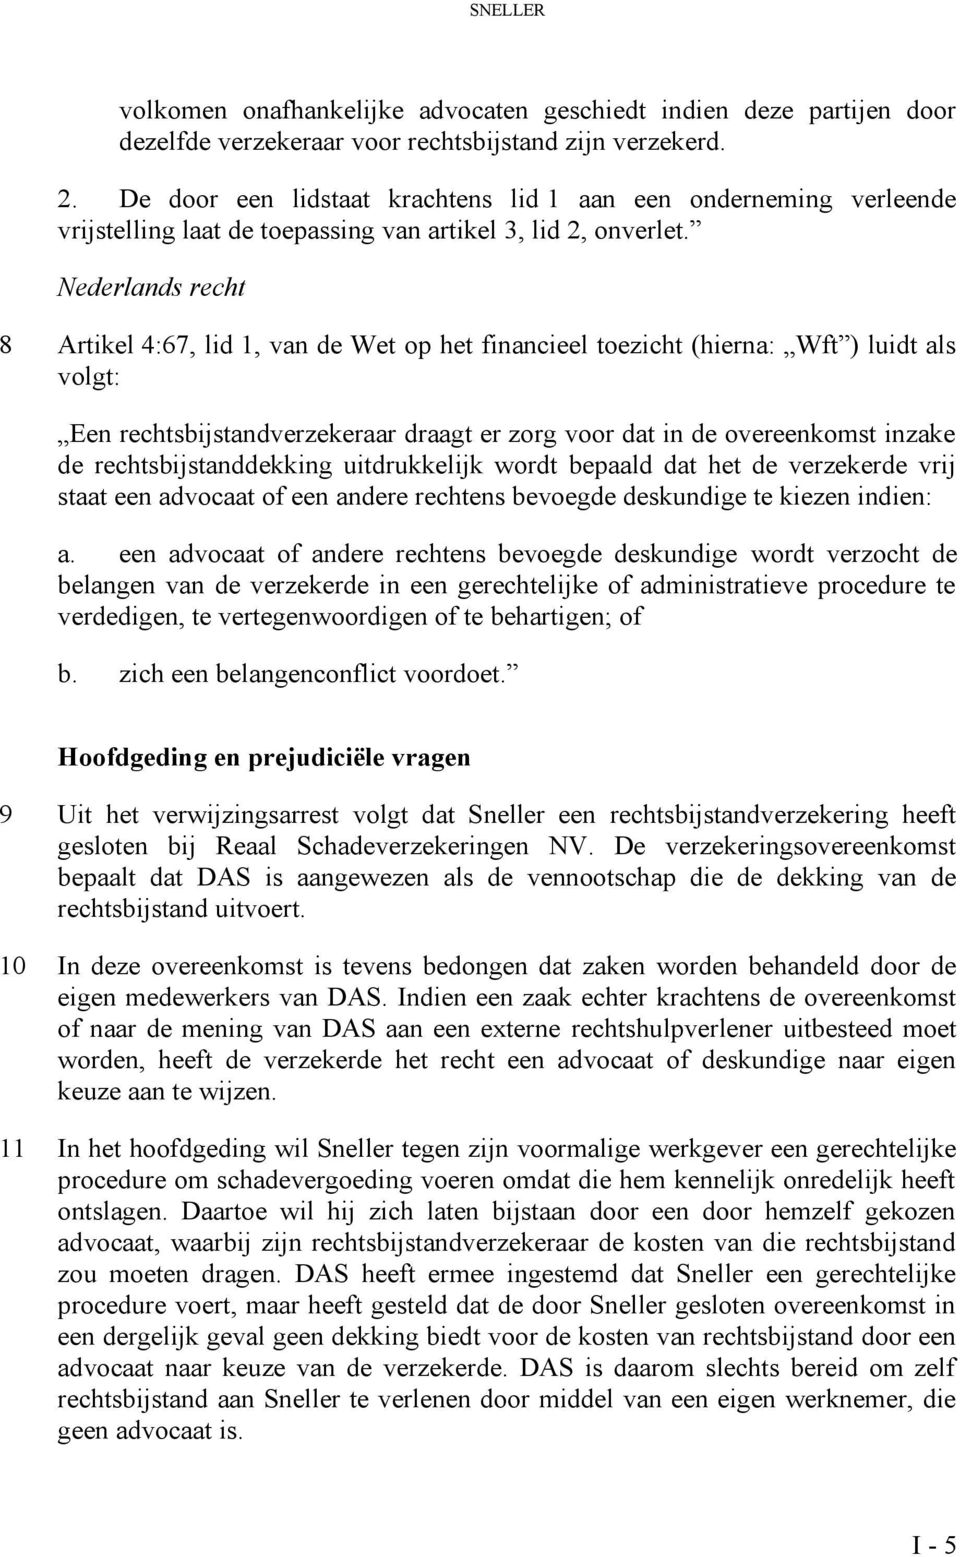 Nederlands recht 8 Artikel 4:67, lid 1, van de Wet op het financieel toezicht (hierna: Wft ) luidt als volgt: Een rechtsbijstandverzekeraar draagt er zorg voor dat in de overeenkomst inzake de